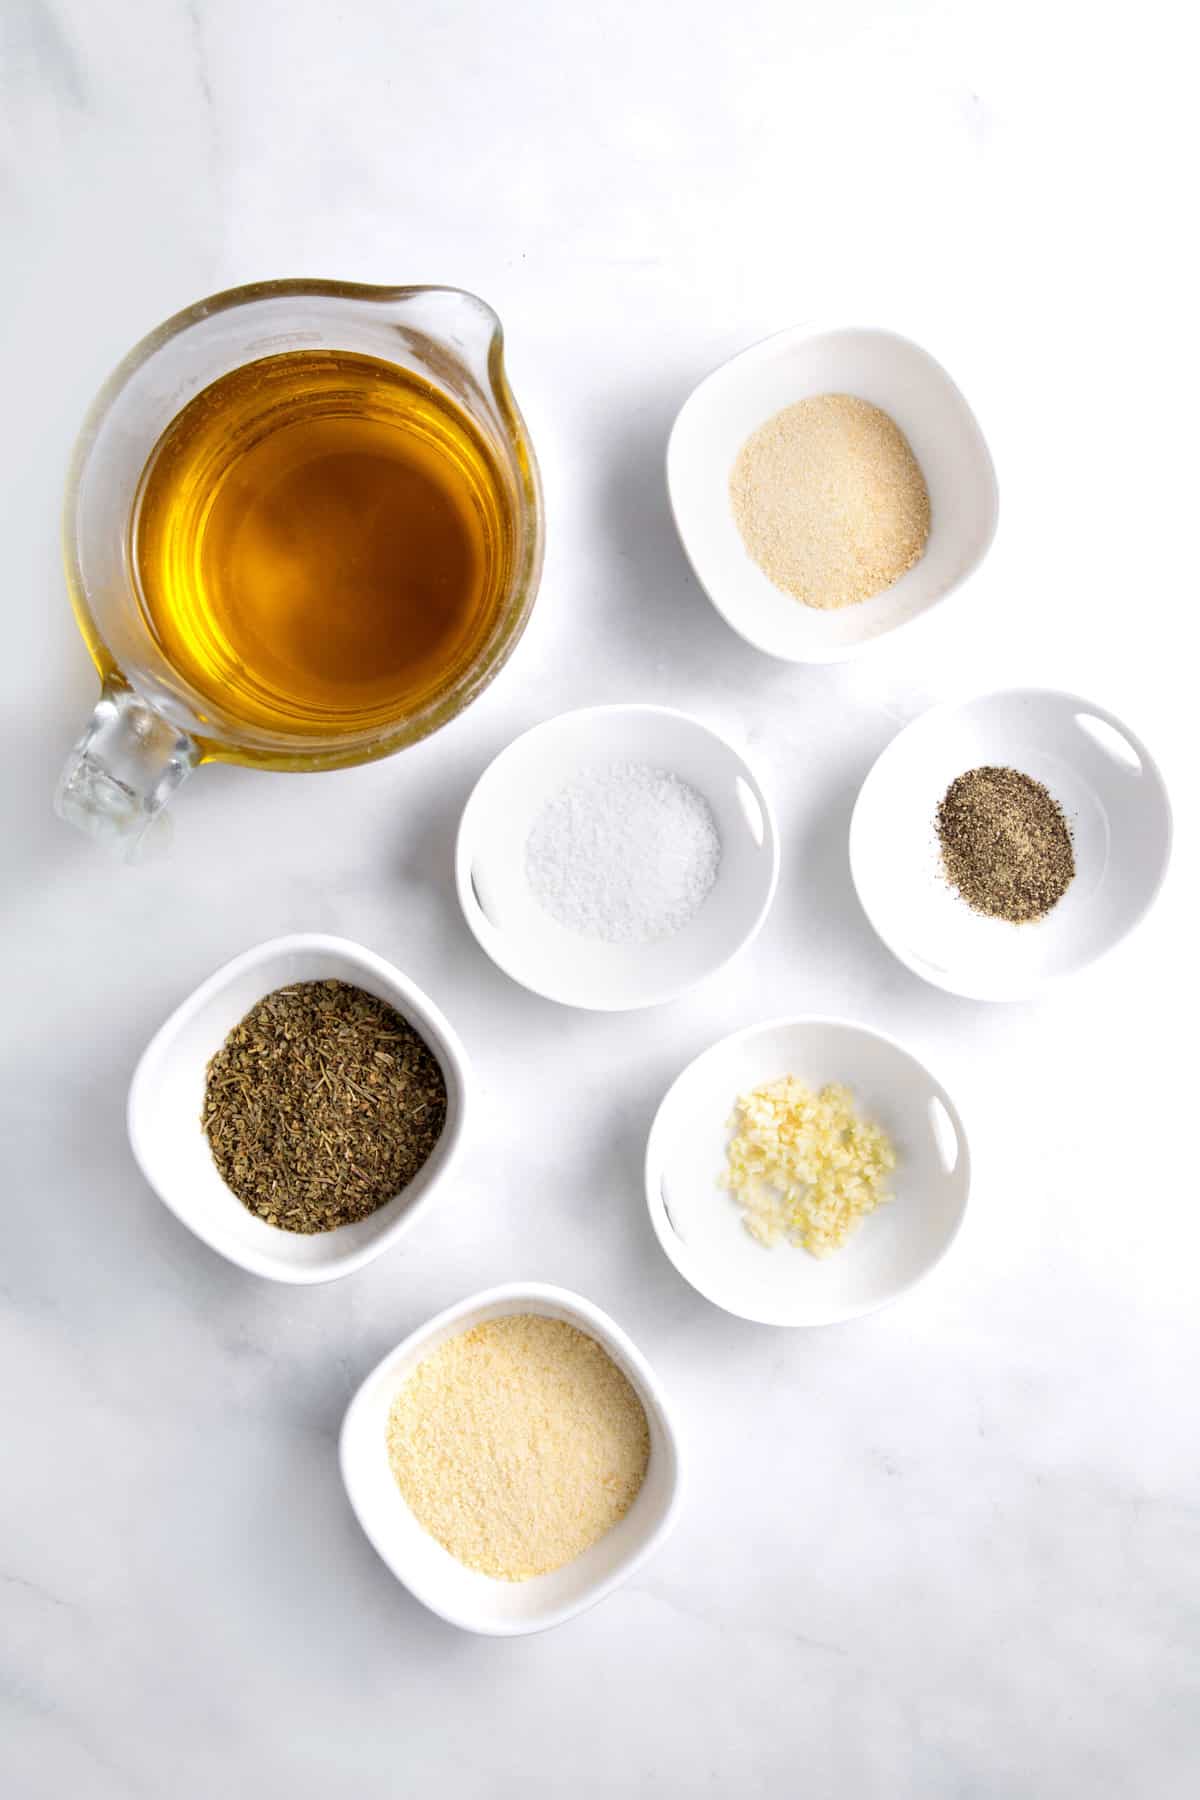 ingredients to make olive oil bread dip